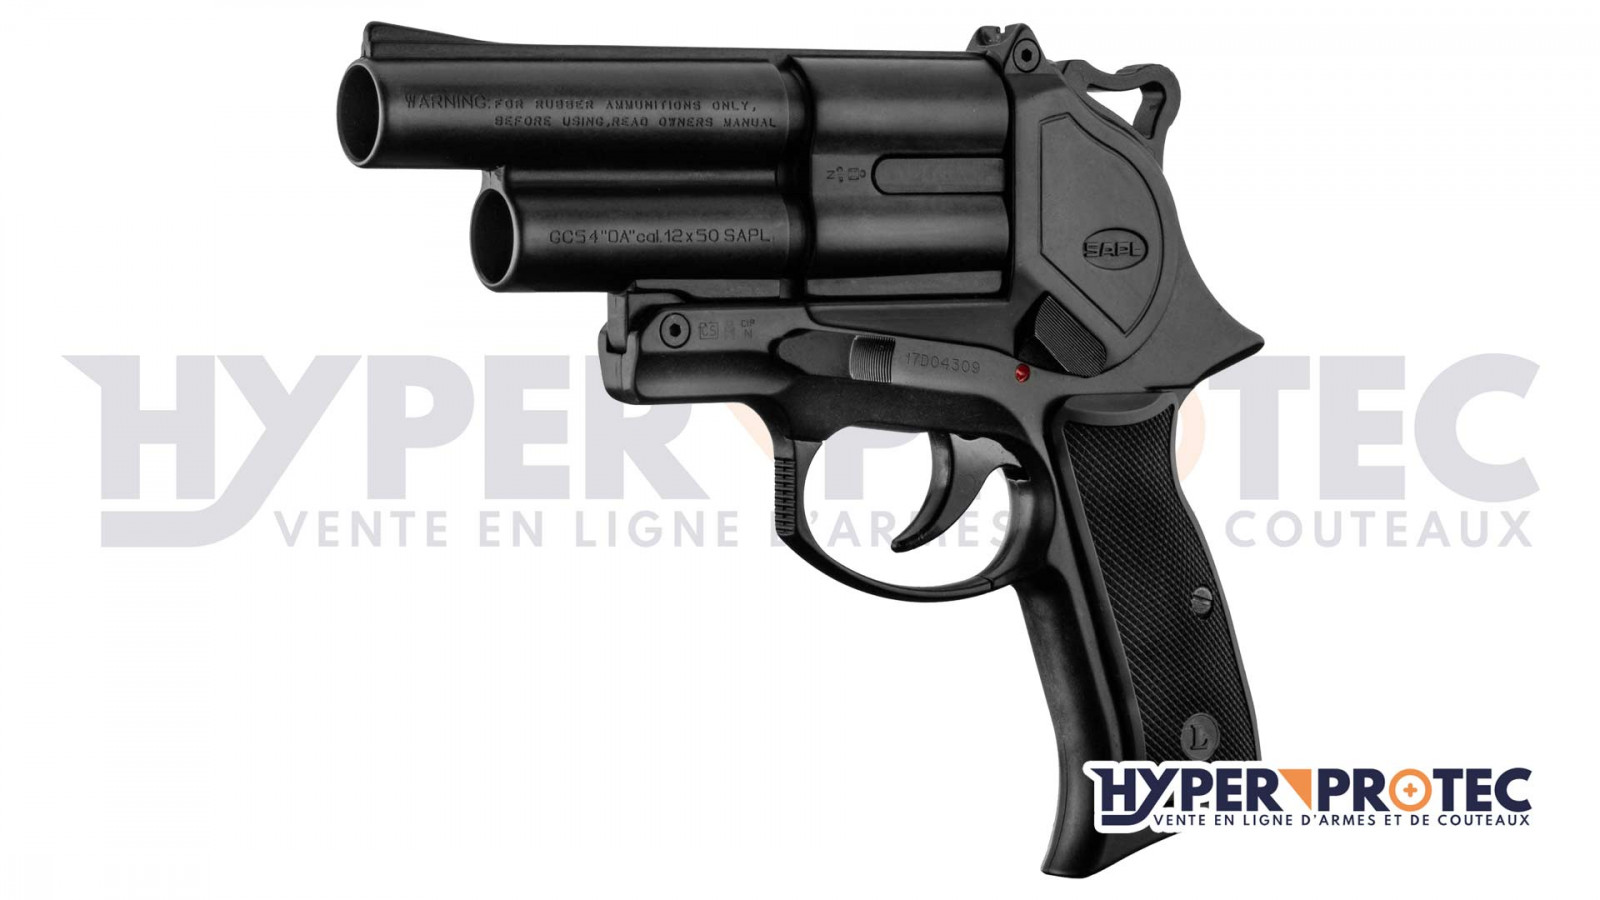 Revolver / Pistolet Poudre noire - Livraison 24h - Armurerie Loisir